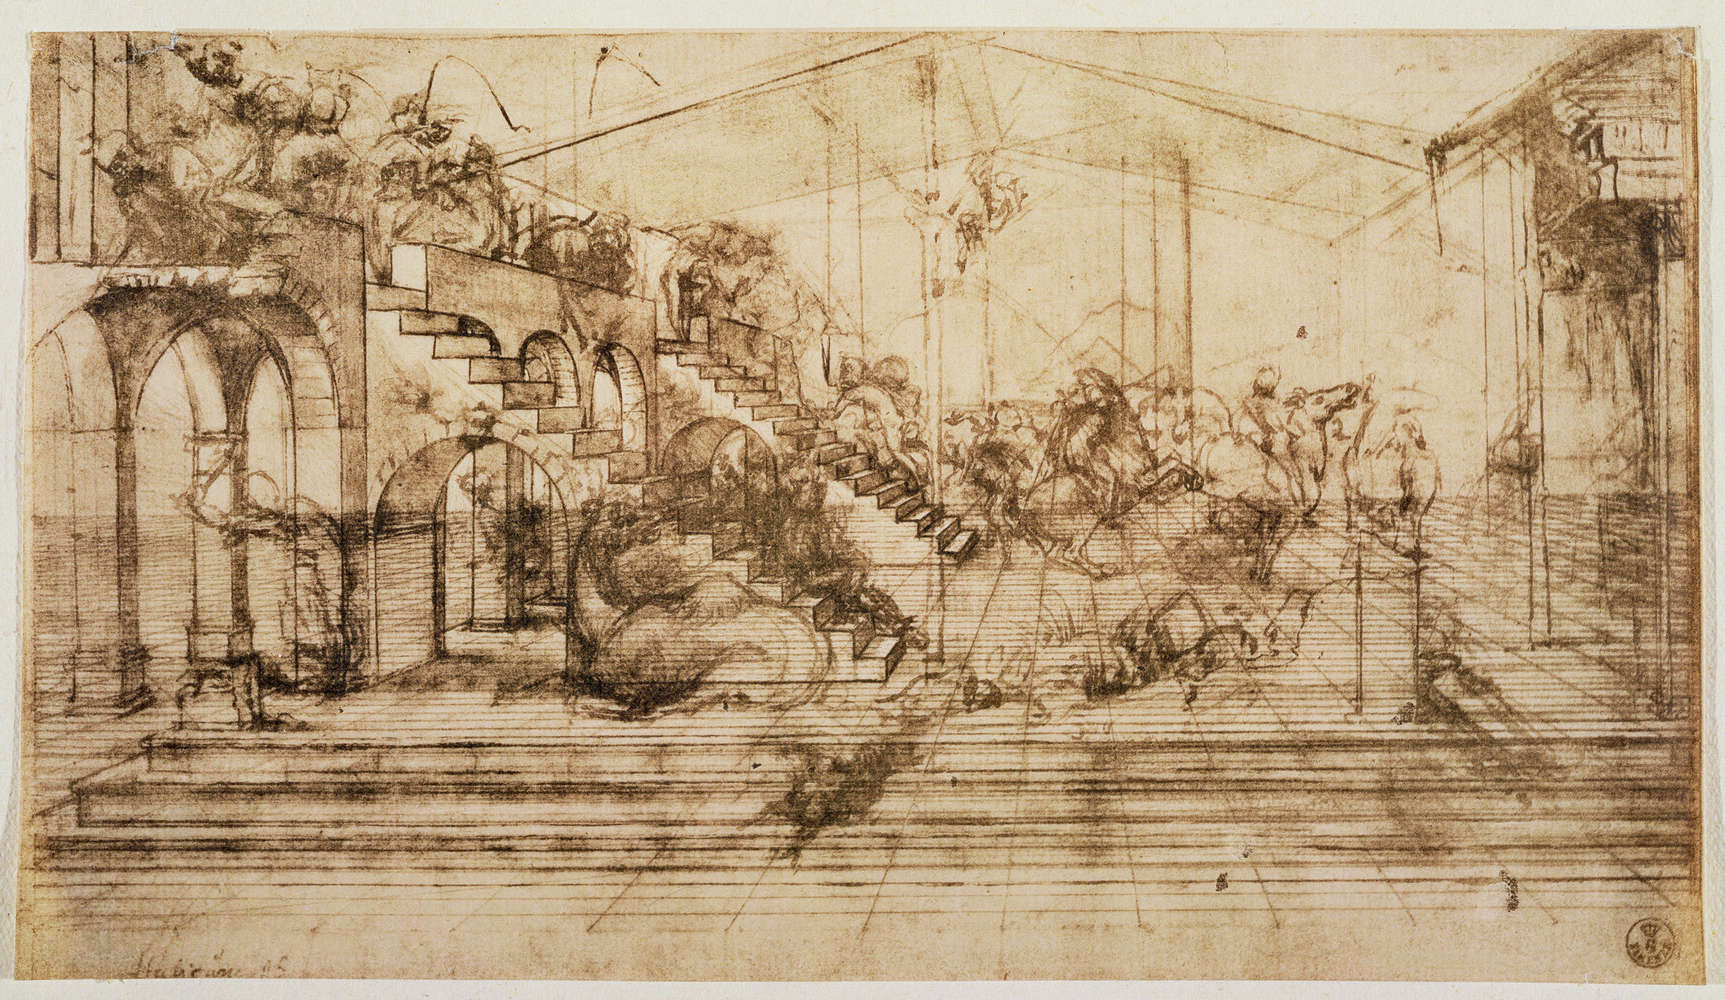             Fotomurali "Studio prospettico per lo sfondo dell'Adorazione dei Magi" di Leonardo da Vinci
        